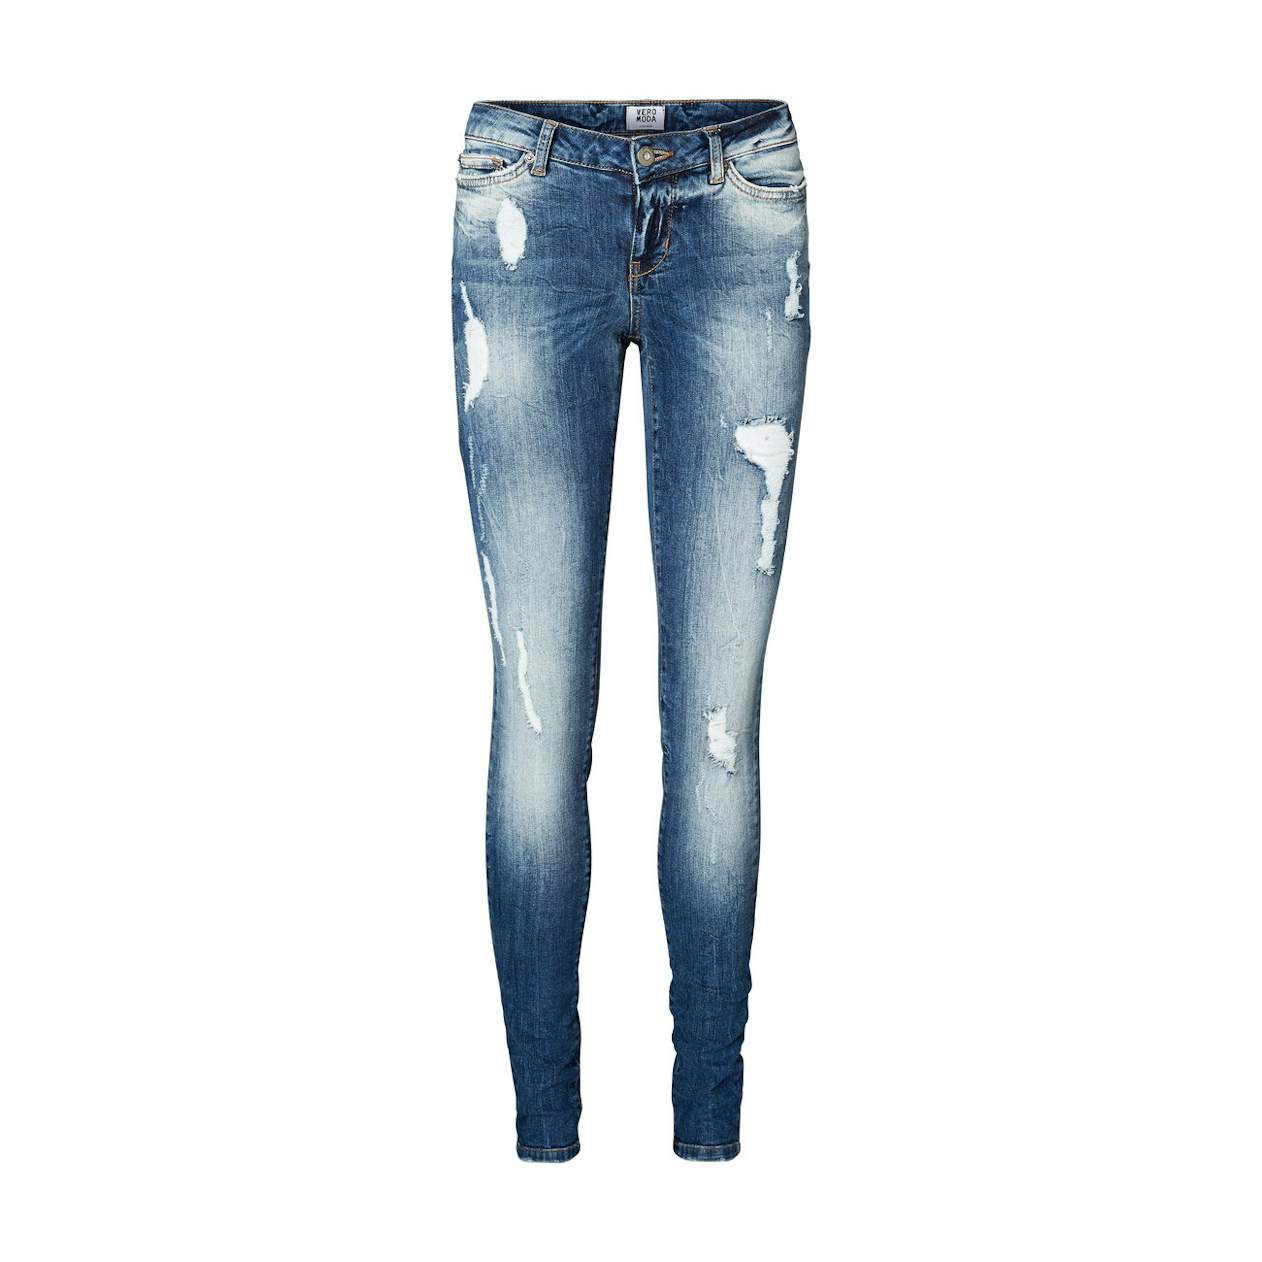 21 fede efterårs-jeans |